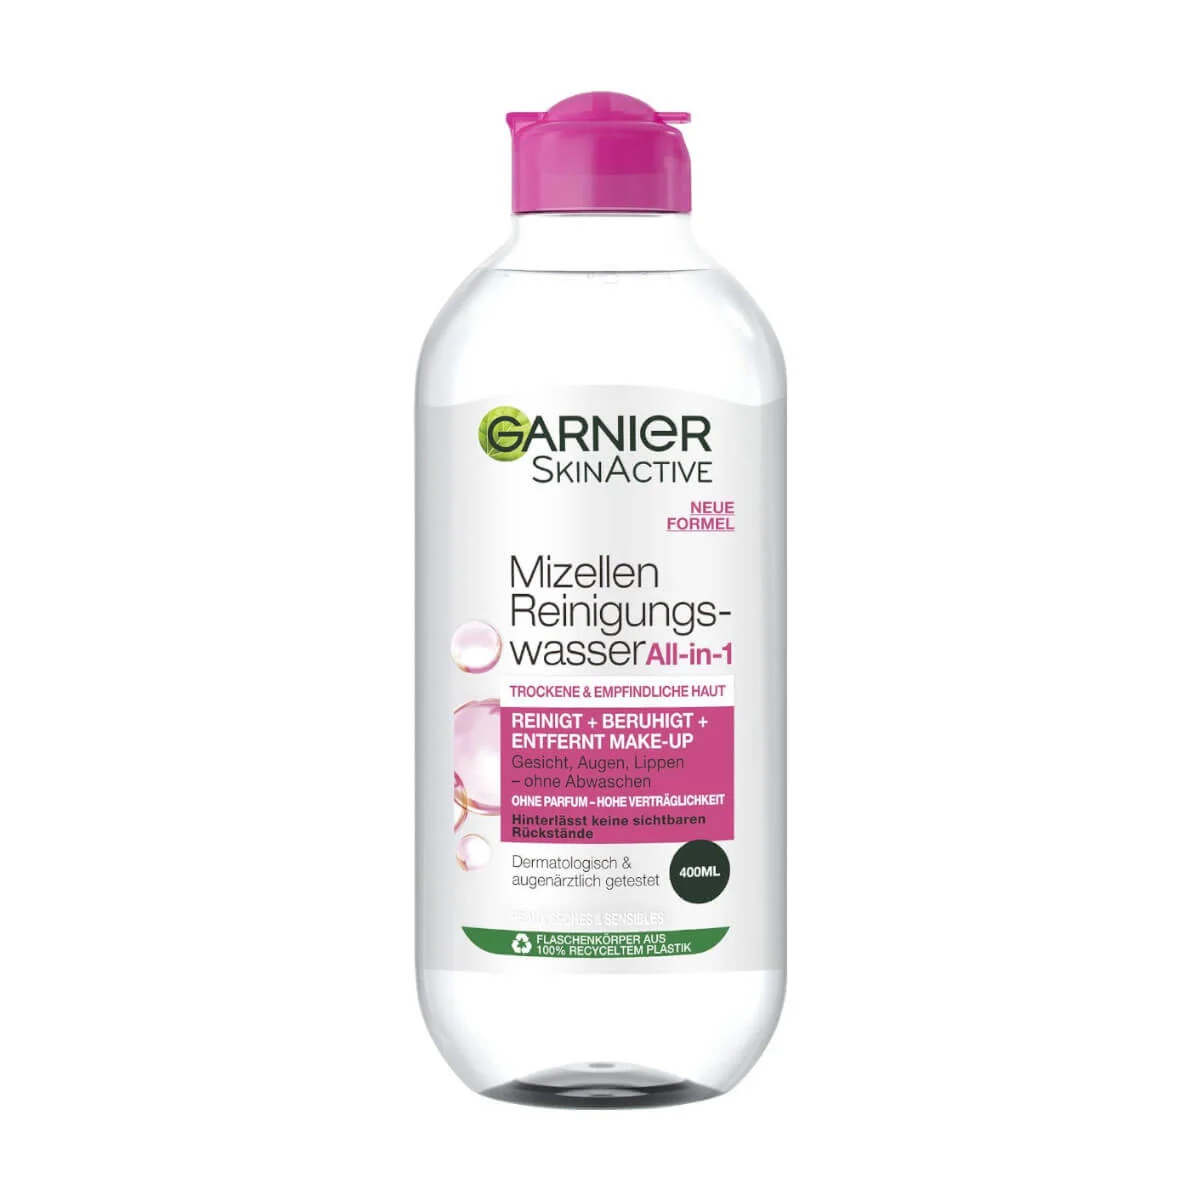 Garnier SkinActive Mizellen Reinigungswasser All-in-1 Empfindliche Haut, 400 ml